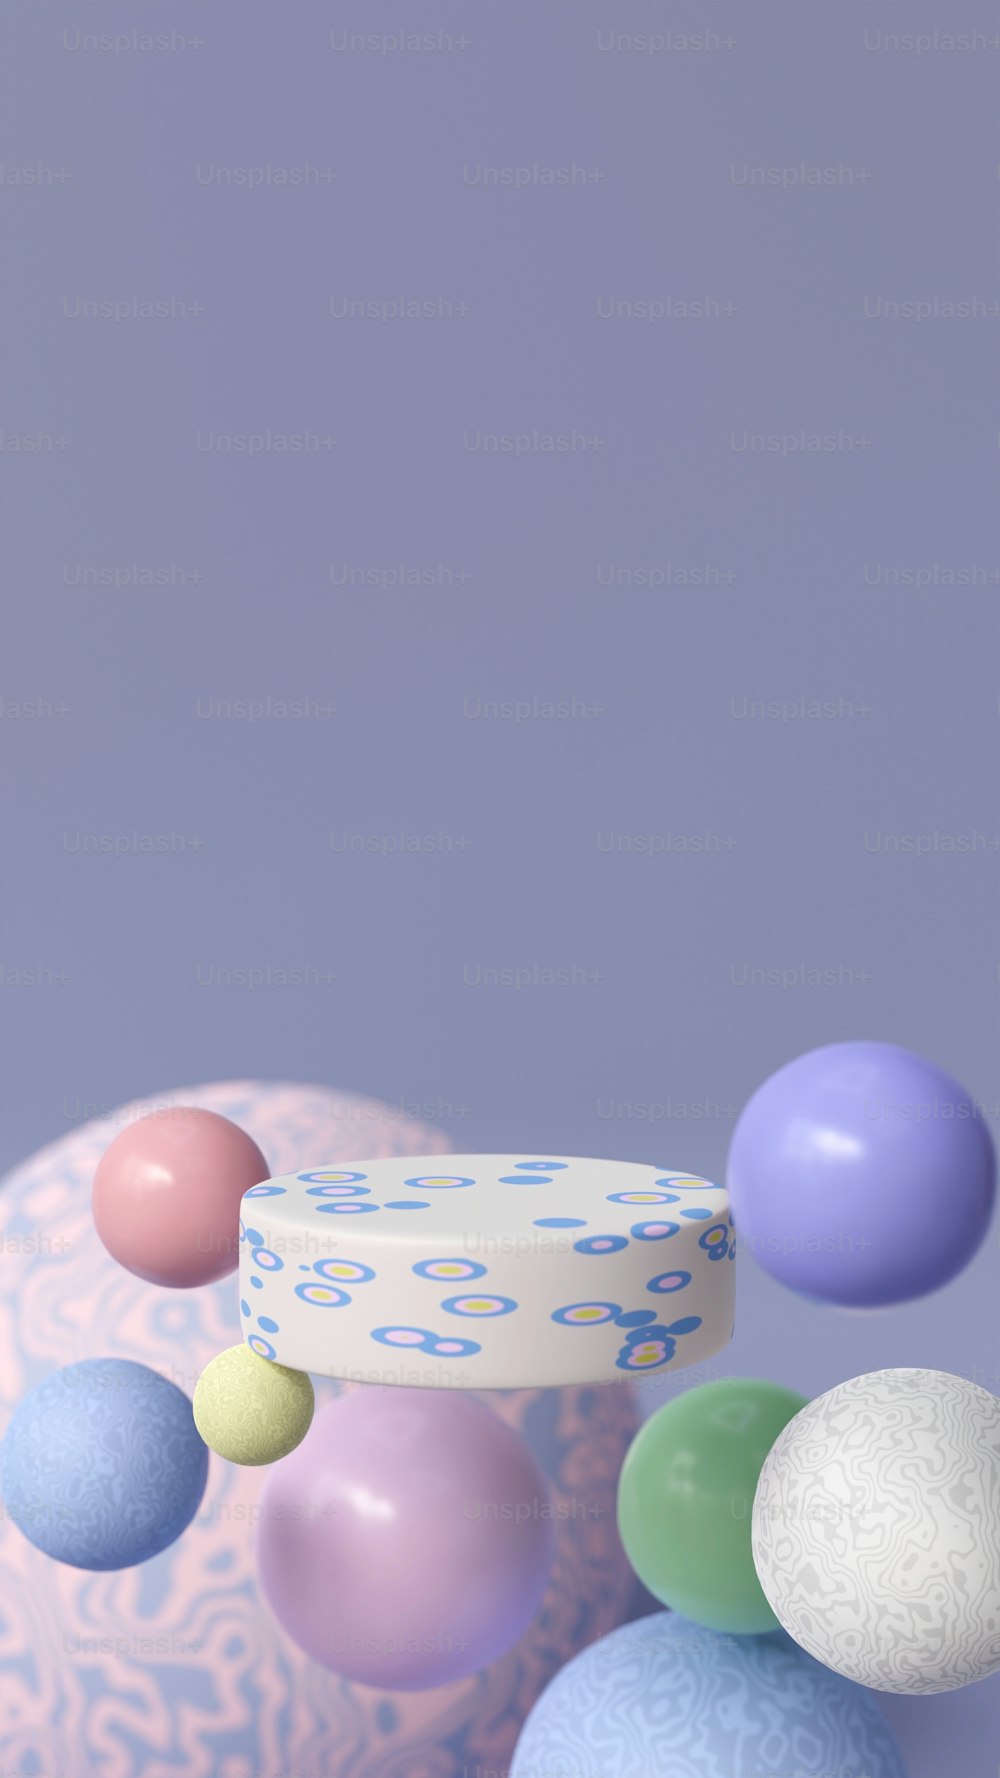 Un pastel sentado encima de una mesa rodeada de globos